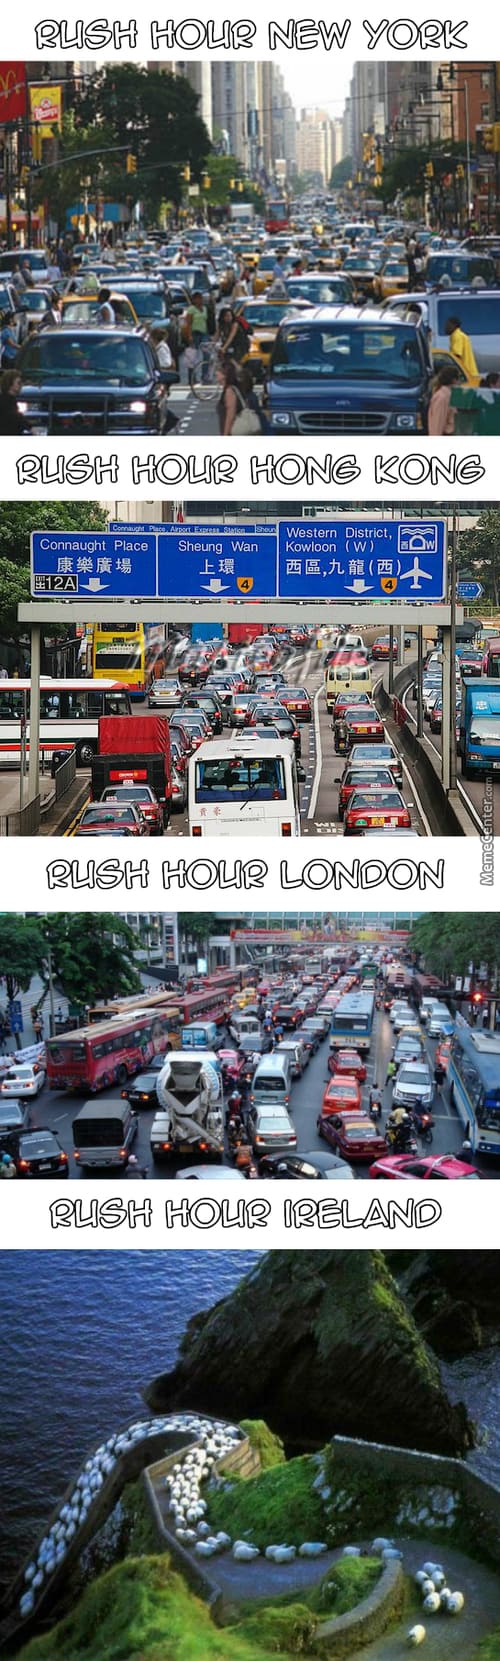 Rush Hour in Ireland Irish Memes